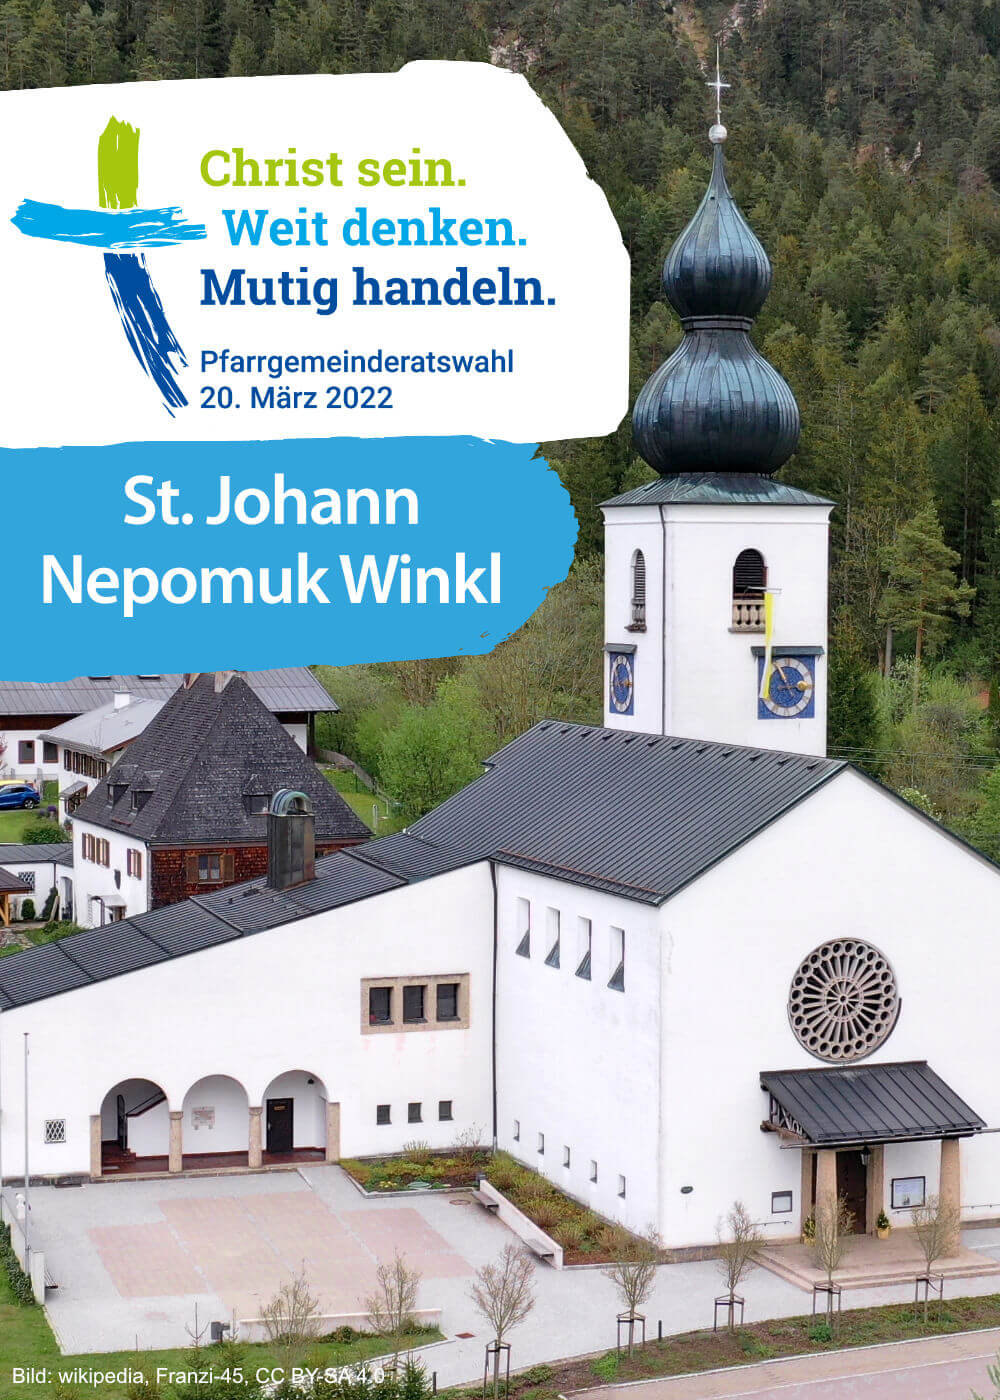 St. Johann Nepomuk Winkl